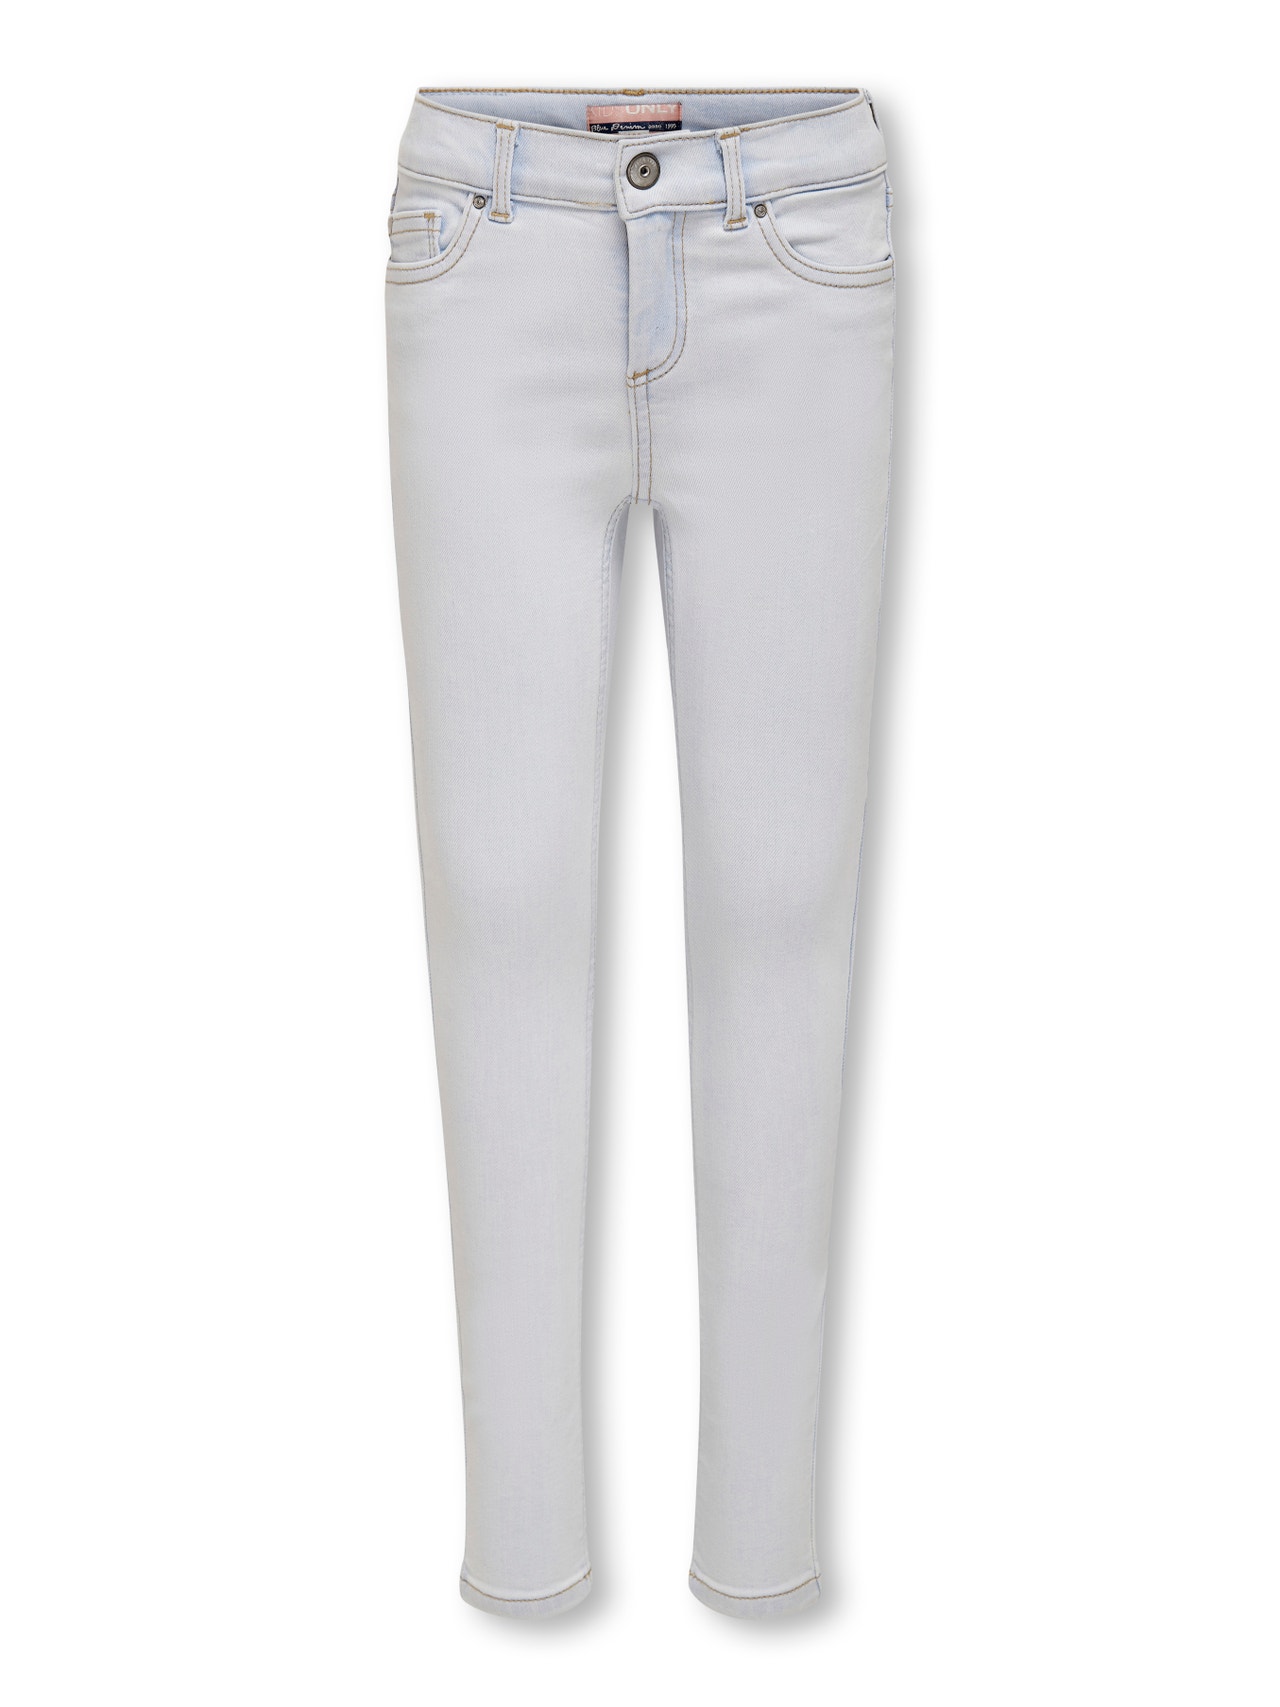 ONLY Jeans Skinny Fit -Light Blue Denim - 15244573